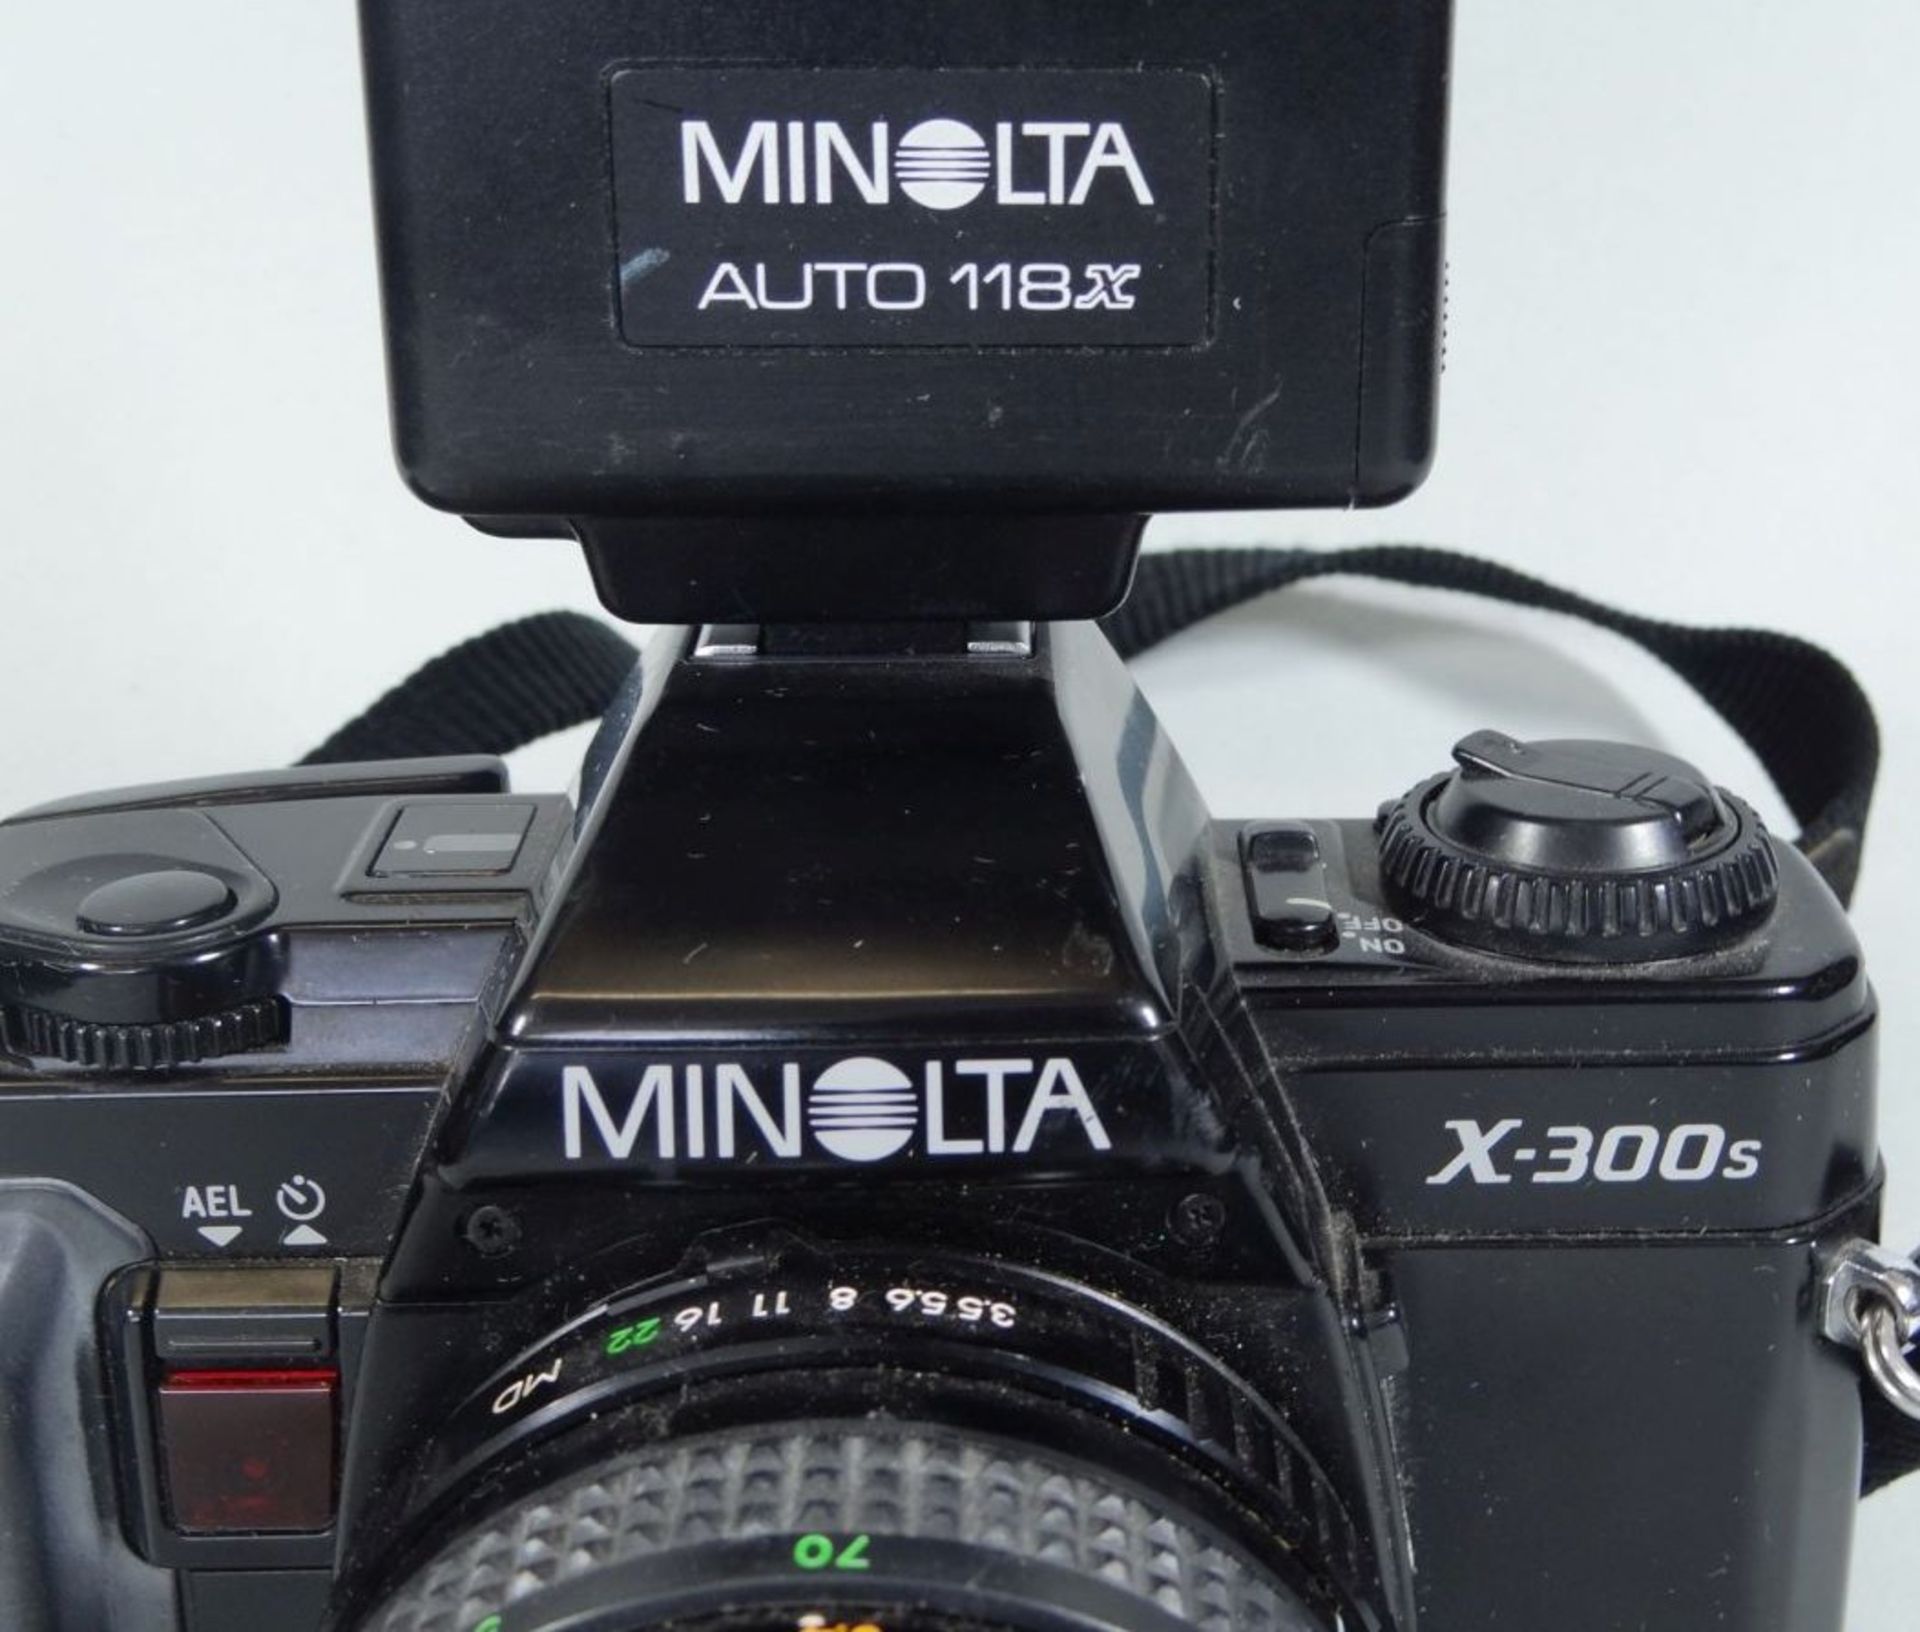 Spiegelreflex "Minolta X-300s" mit Blitzlicht - Bild 3 aus 4